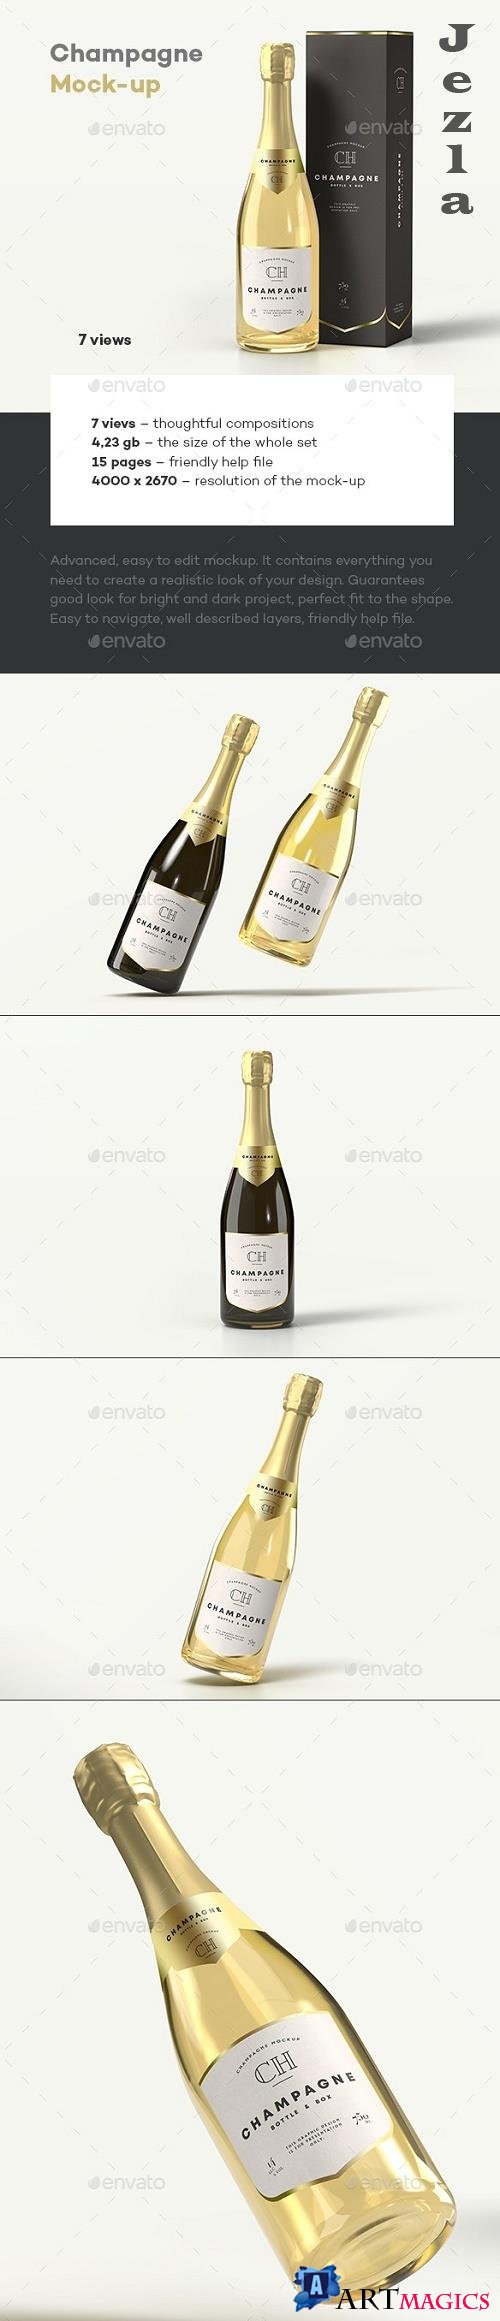 Champagne Bottle Mock-up - 33684444